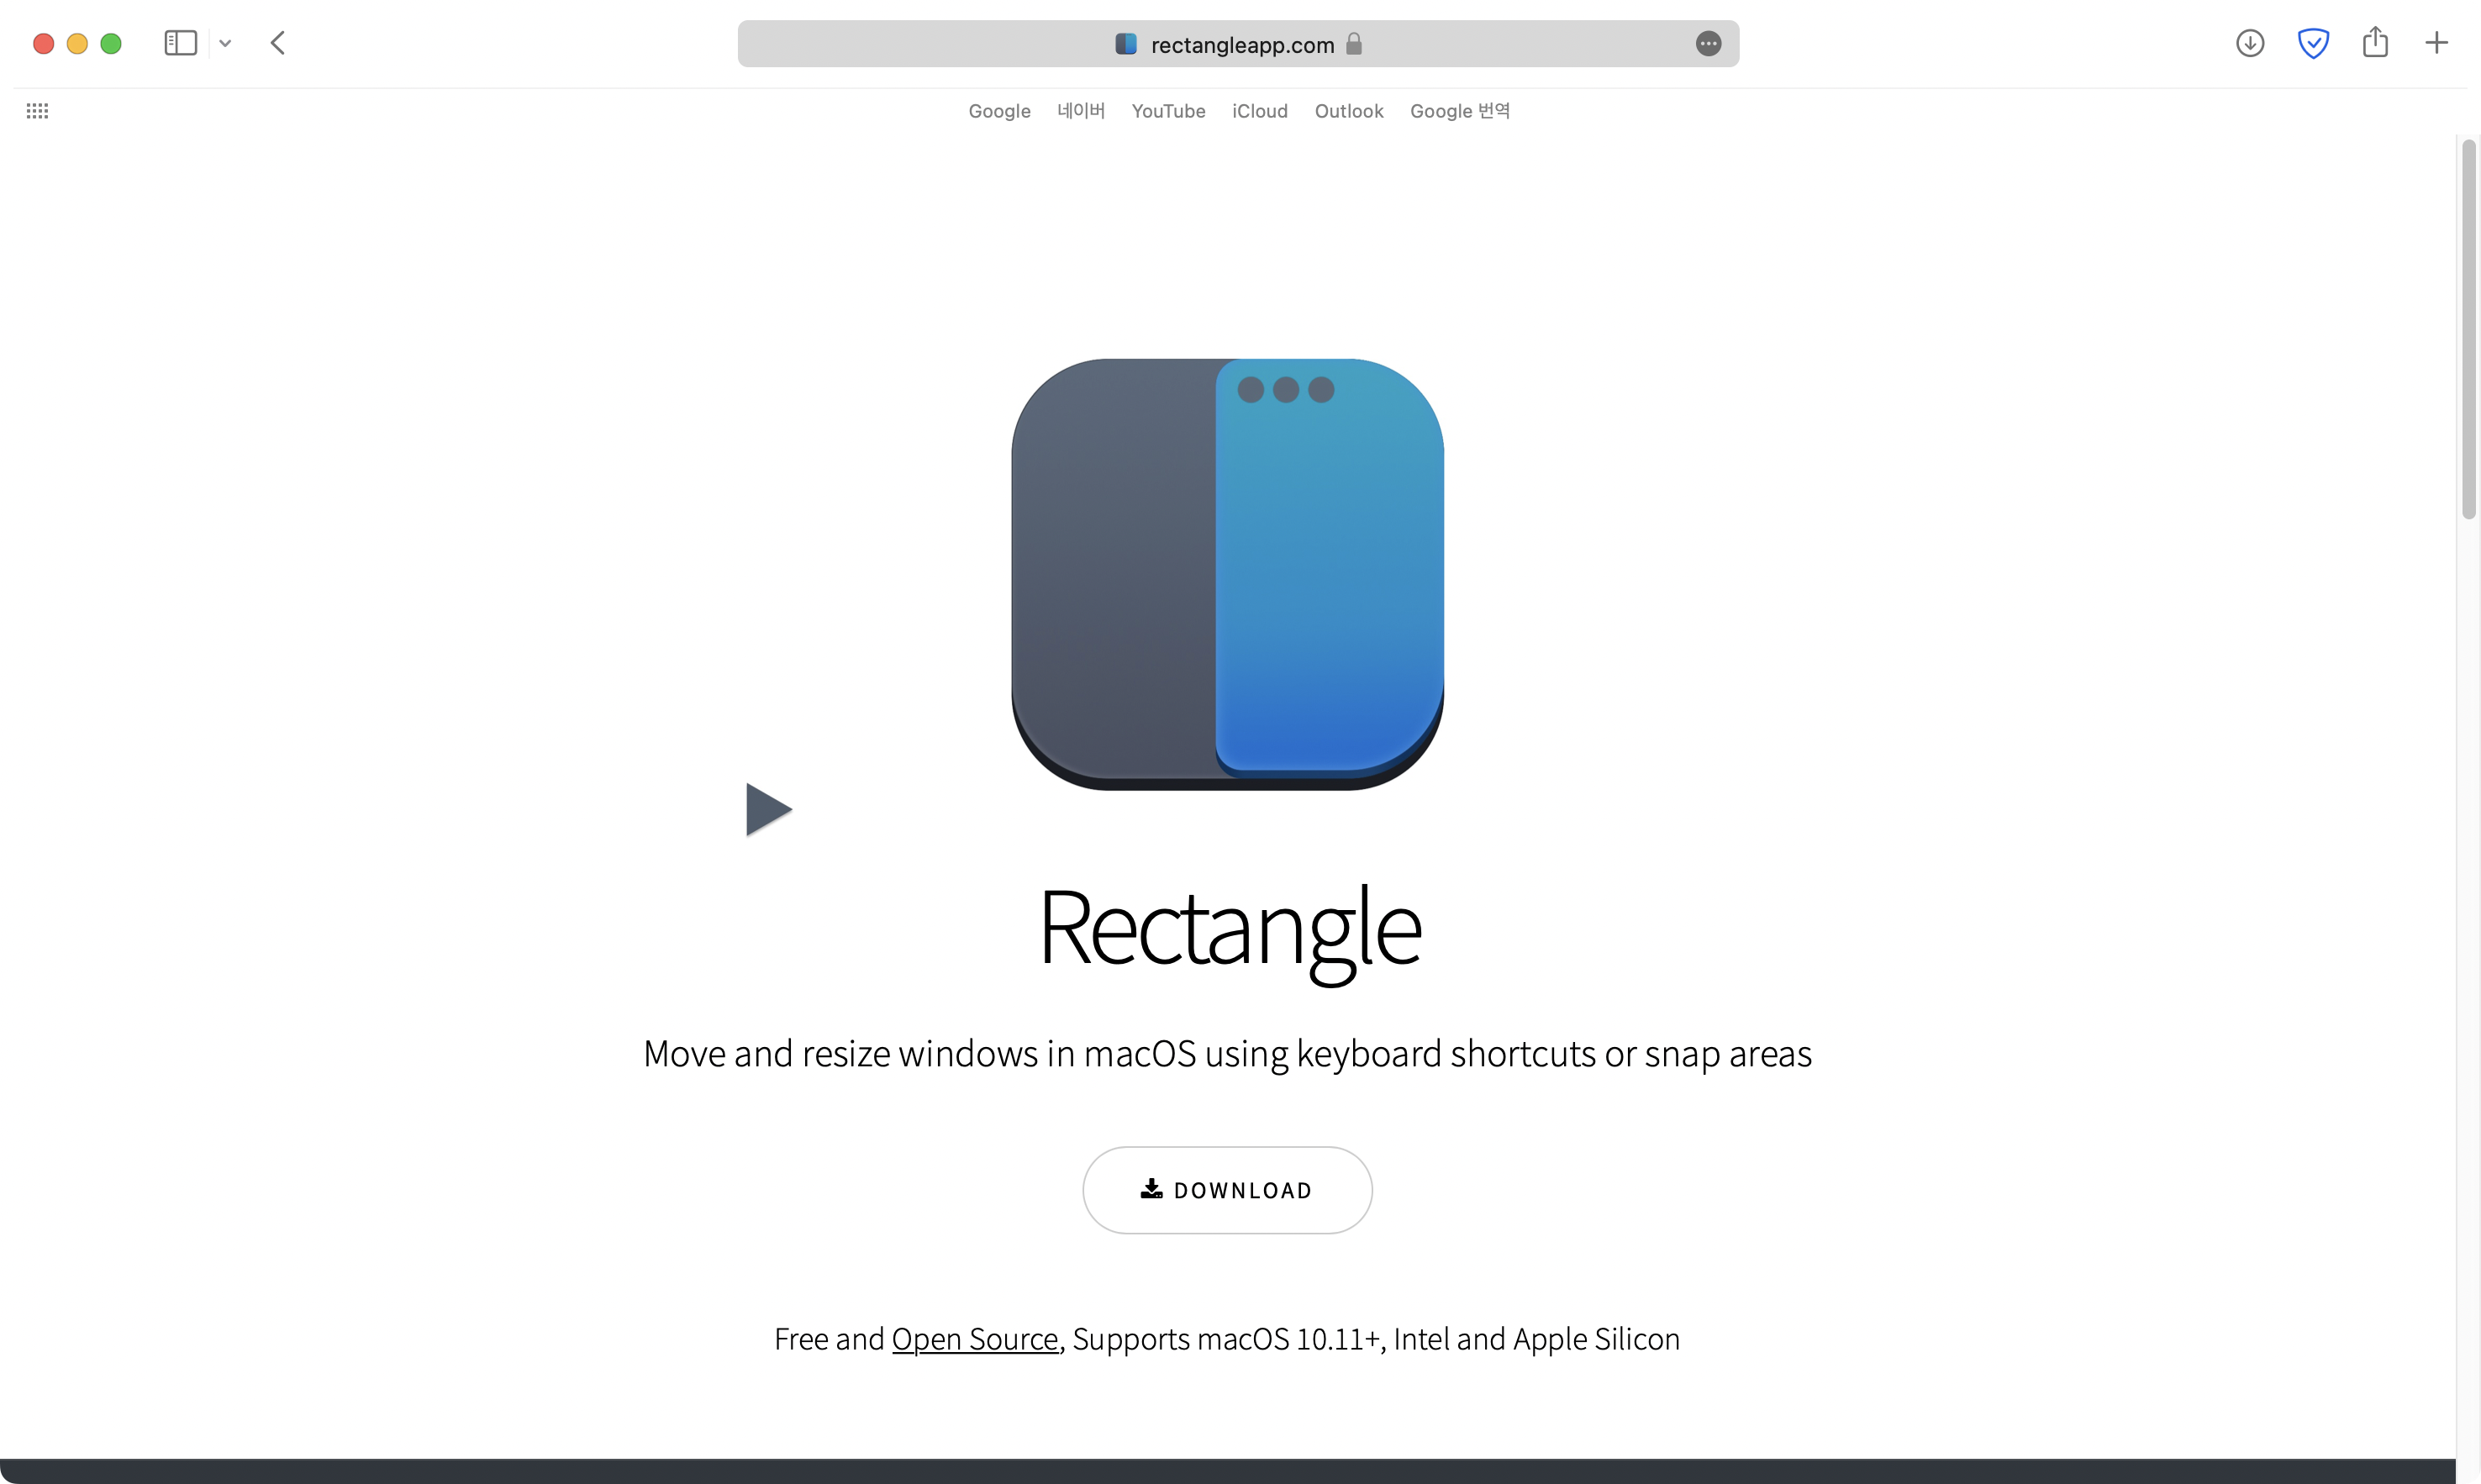 무료 앱 &quot;Rectangle&quot;은 홈페이지를 통해 다운로드 받을 수 있다.